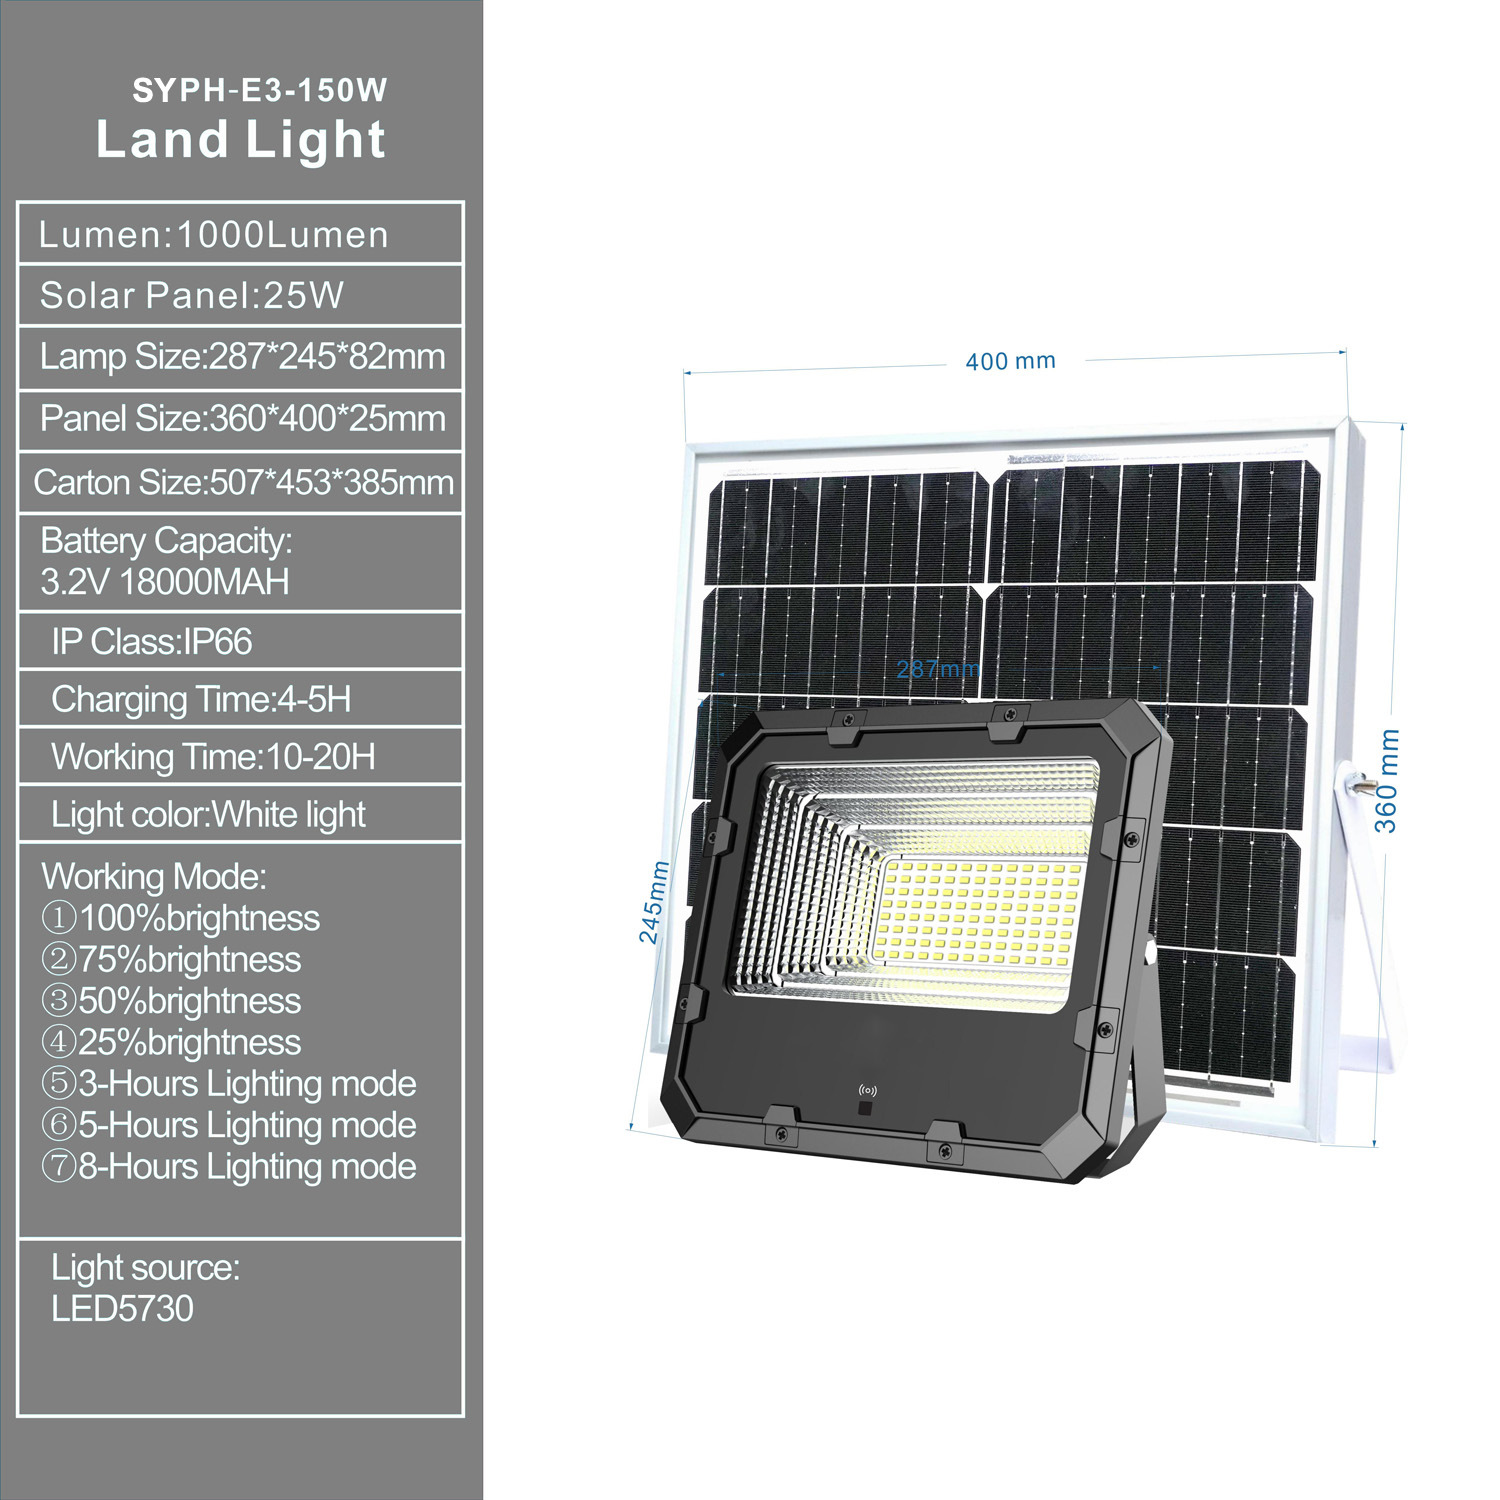 Luz solar para exteriores / Luz solar LED / Luz solar de inundación 150W Luz solar